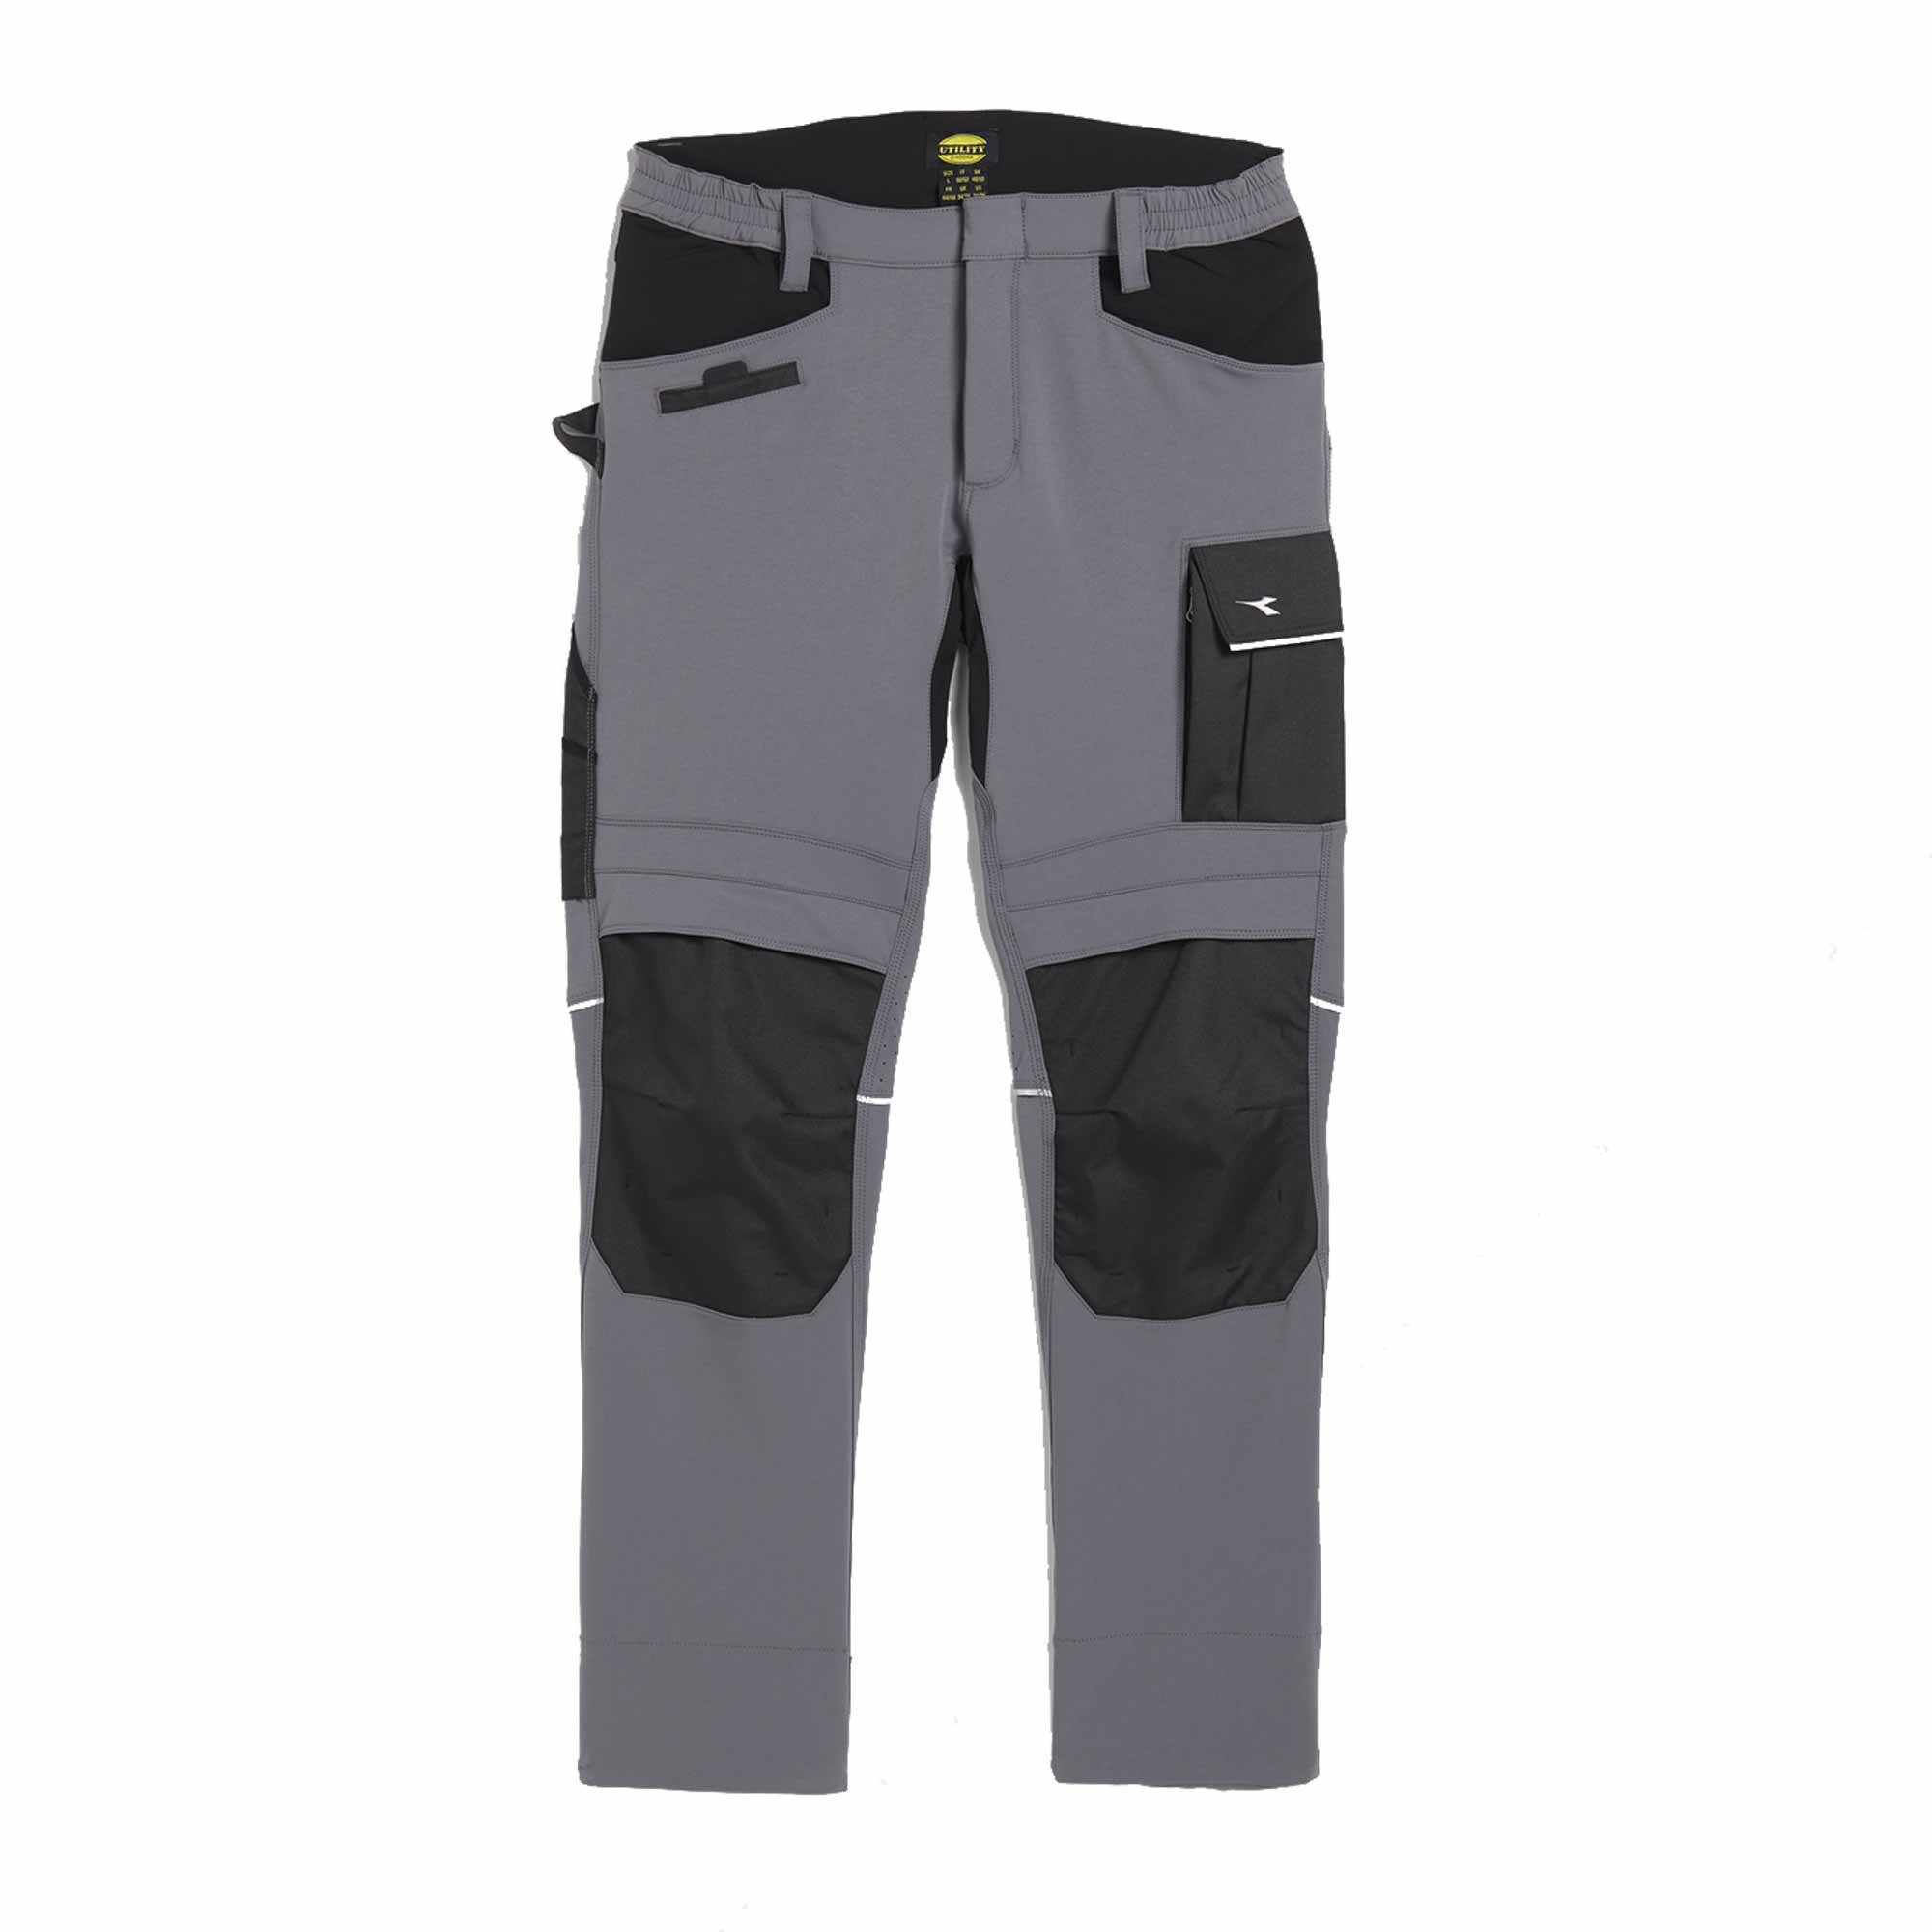 Pantalone Diadora Pant Carbon Performance